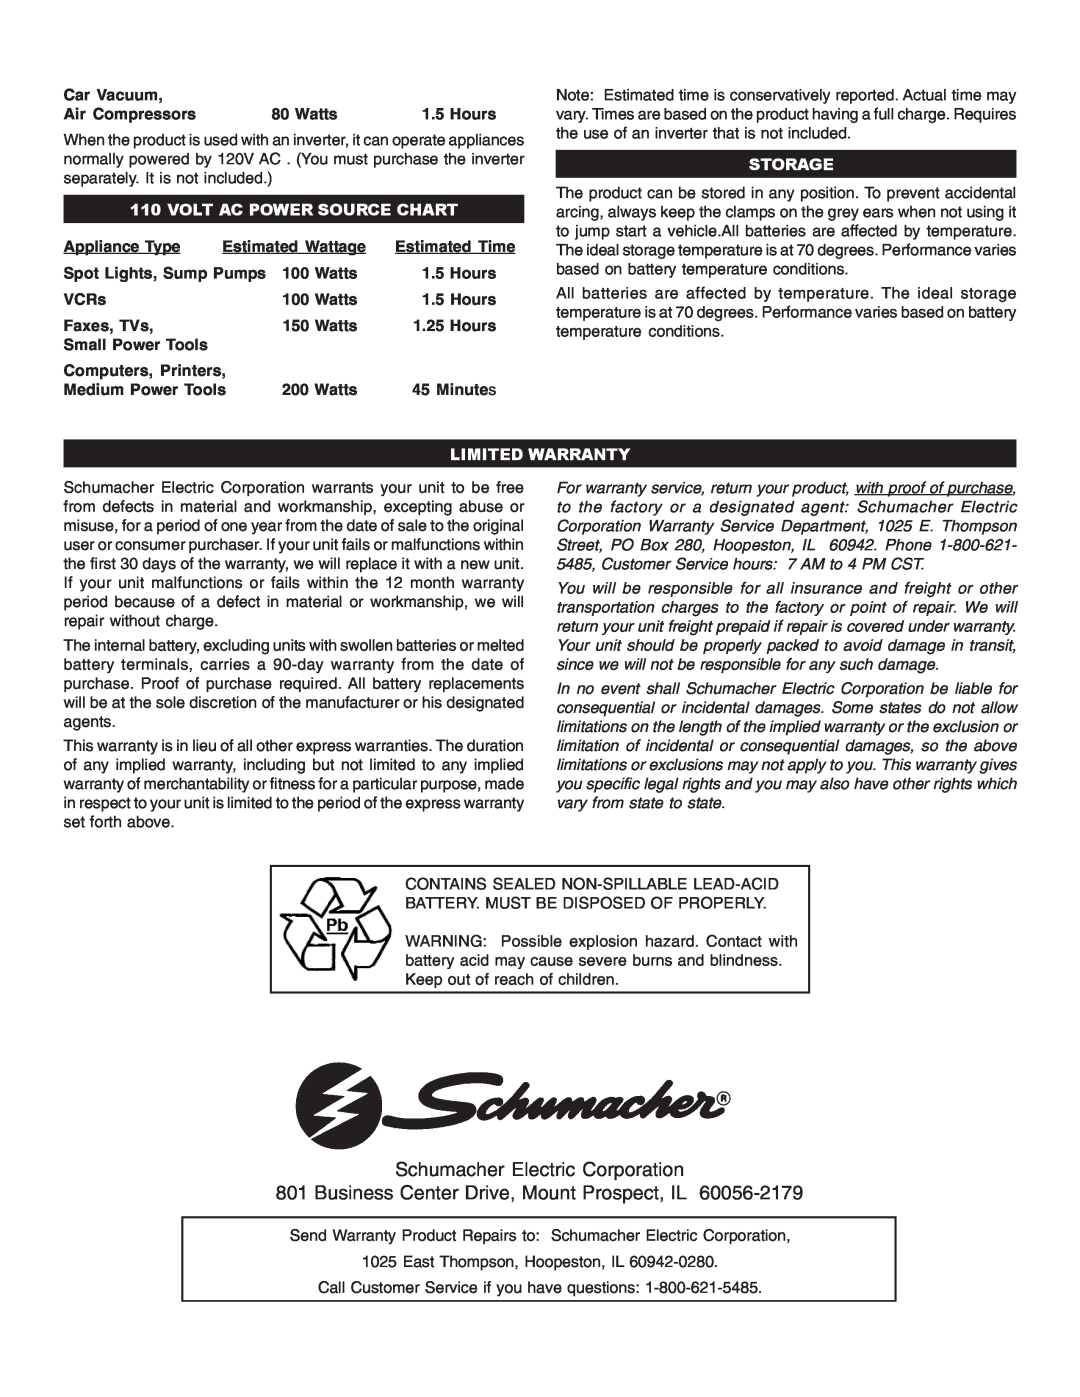 Schumacher IPD-1800, IP-180 Volt Ac Power Source Chart, Storage, Limited Warranty, Schumacher Electric Corporation 